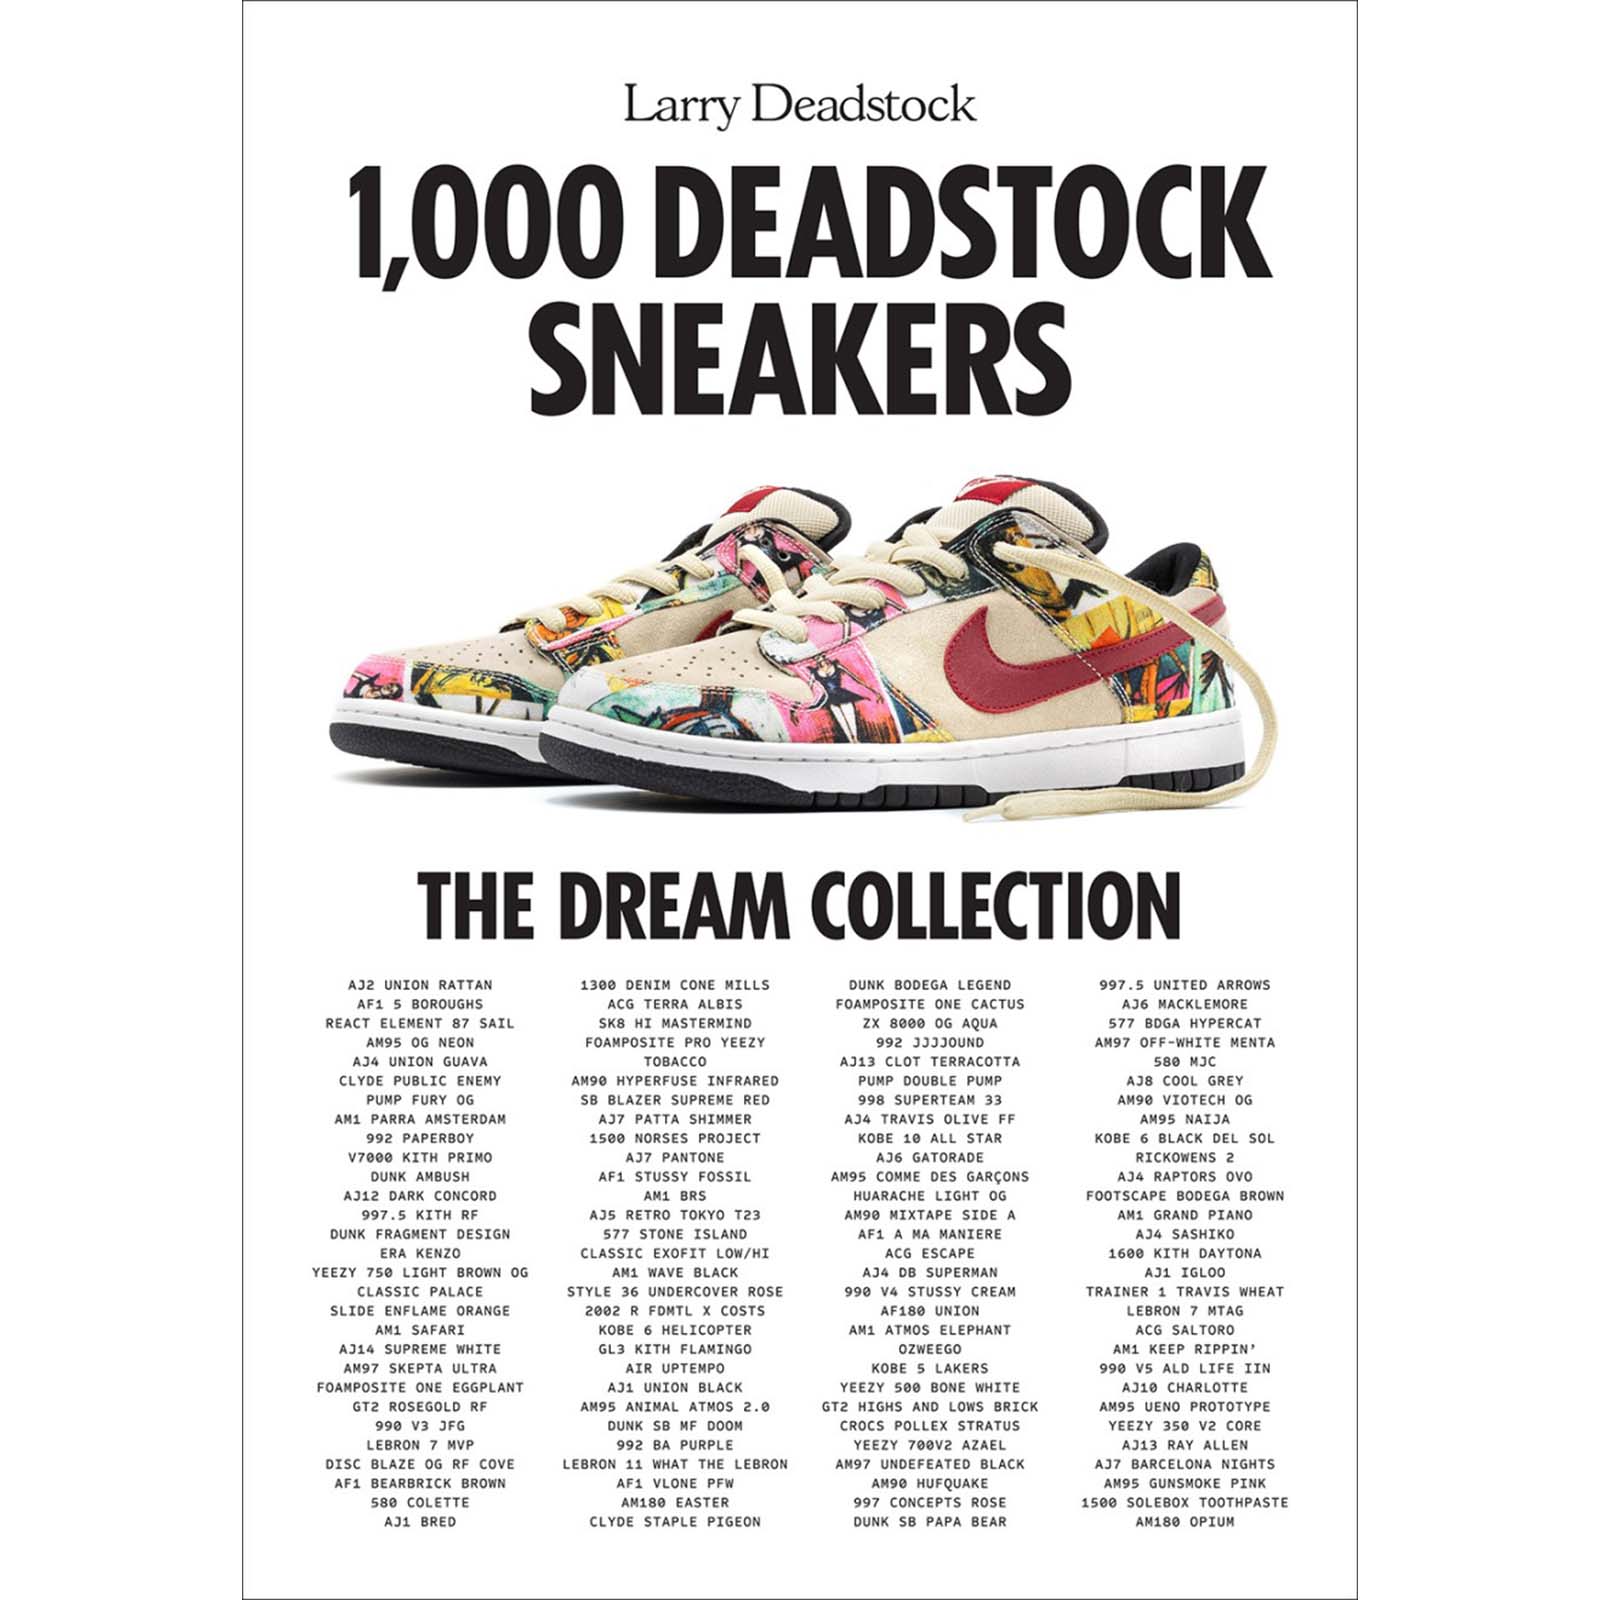 1,000 Deadstock Sneakers